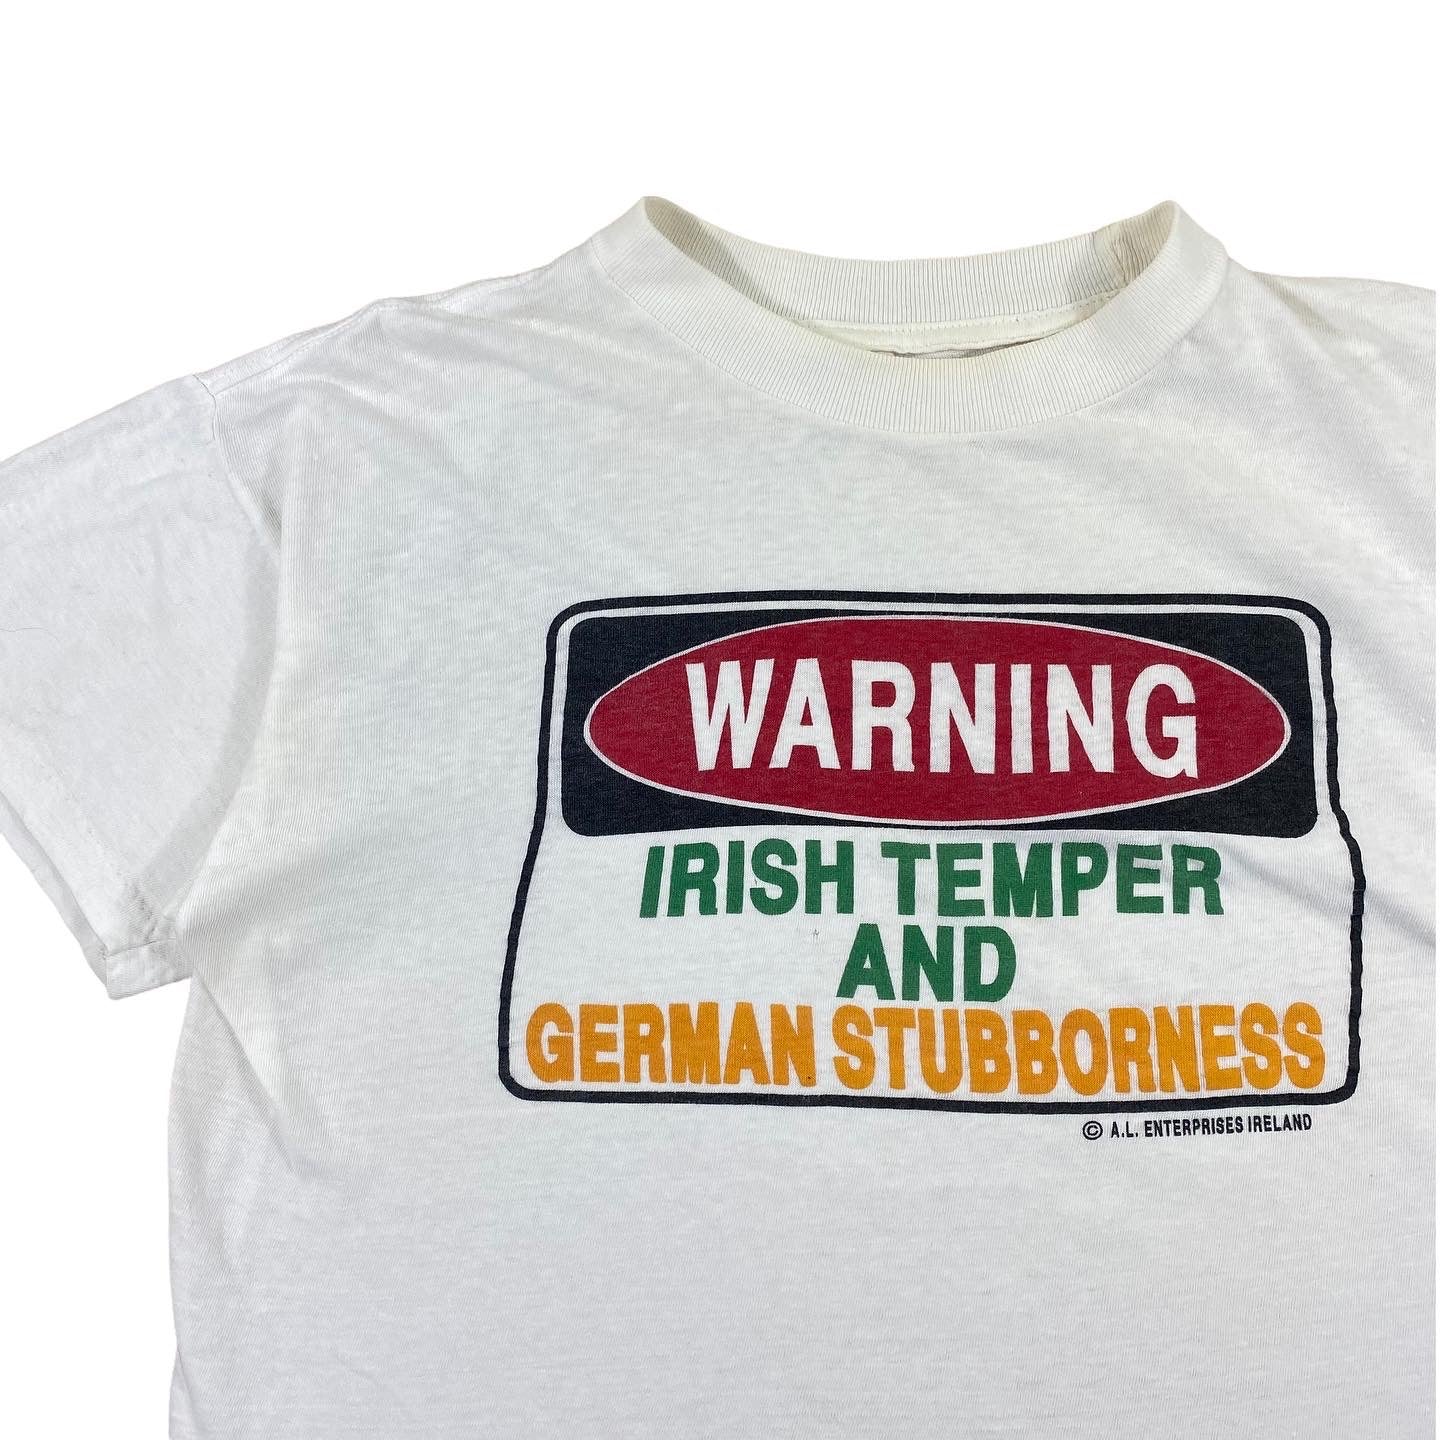 Irish temper German stubbornness tee